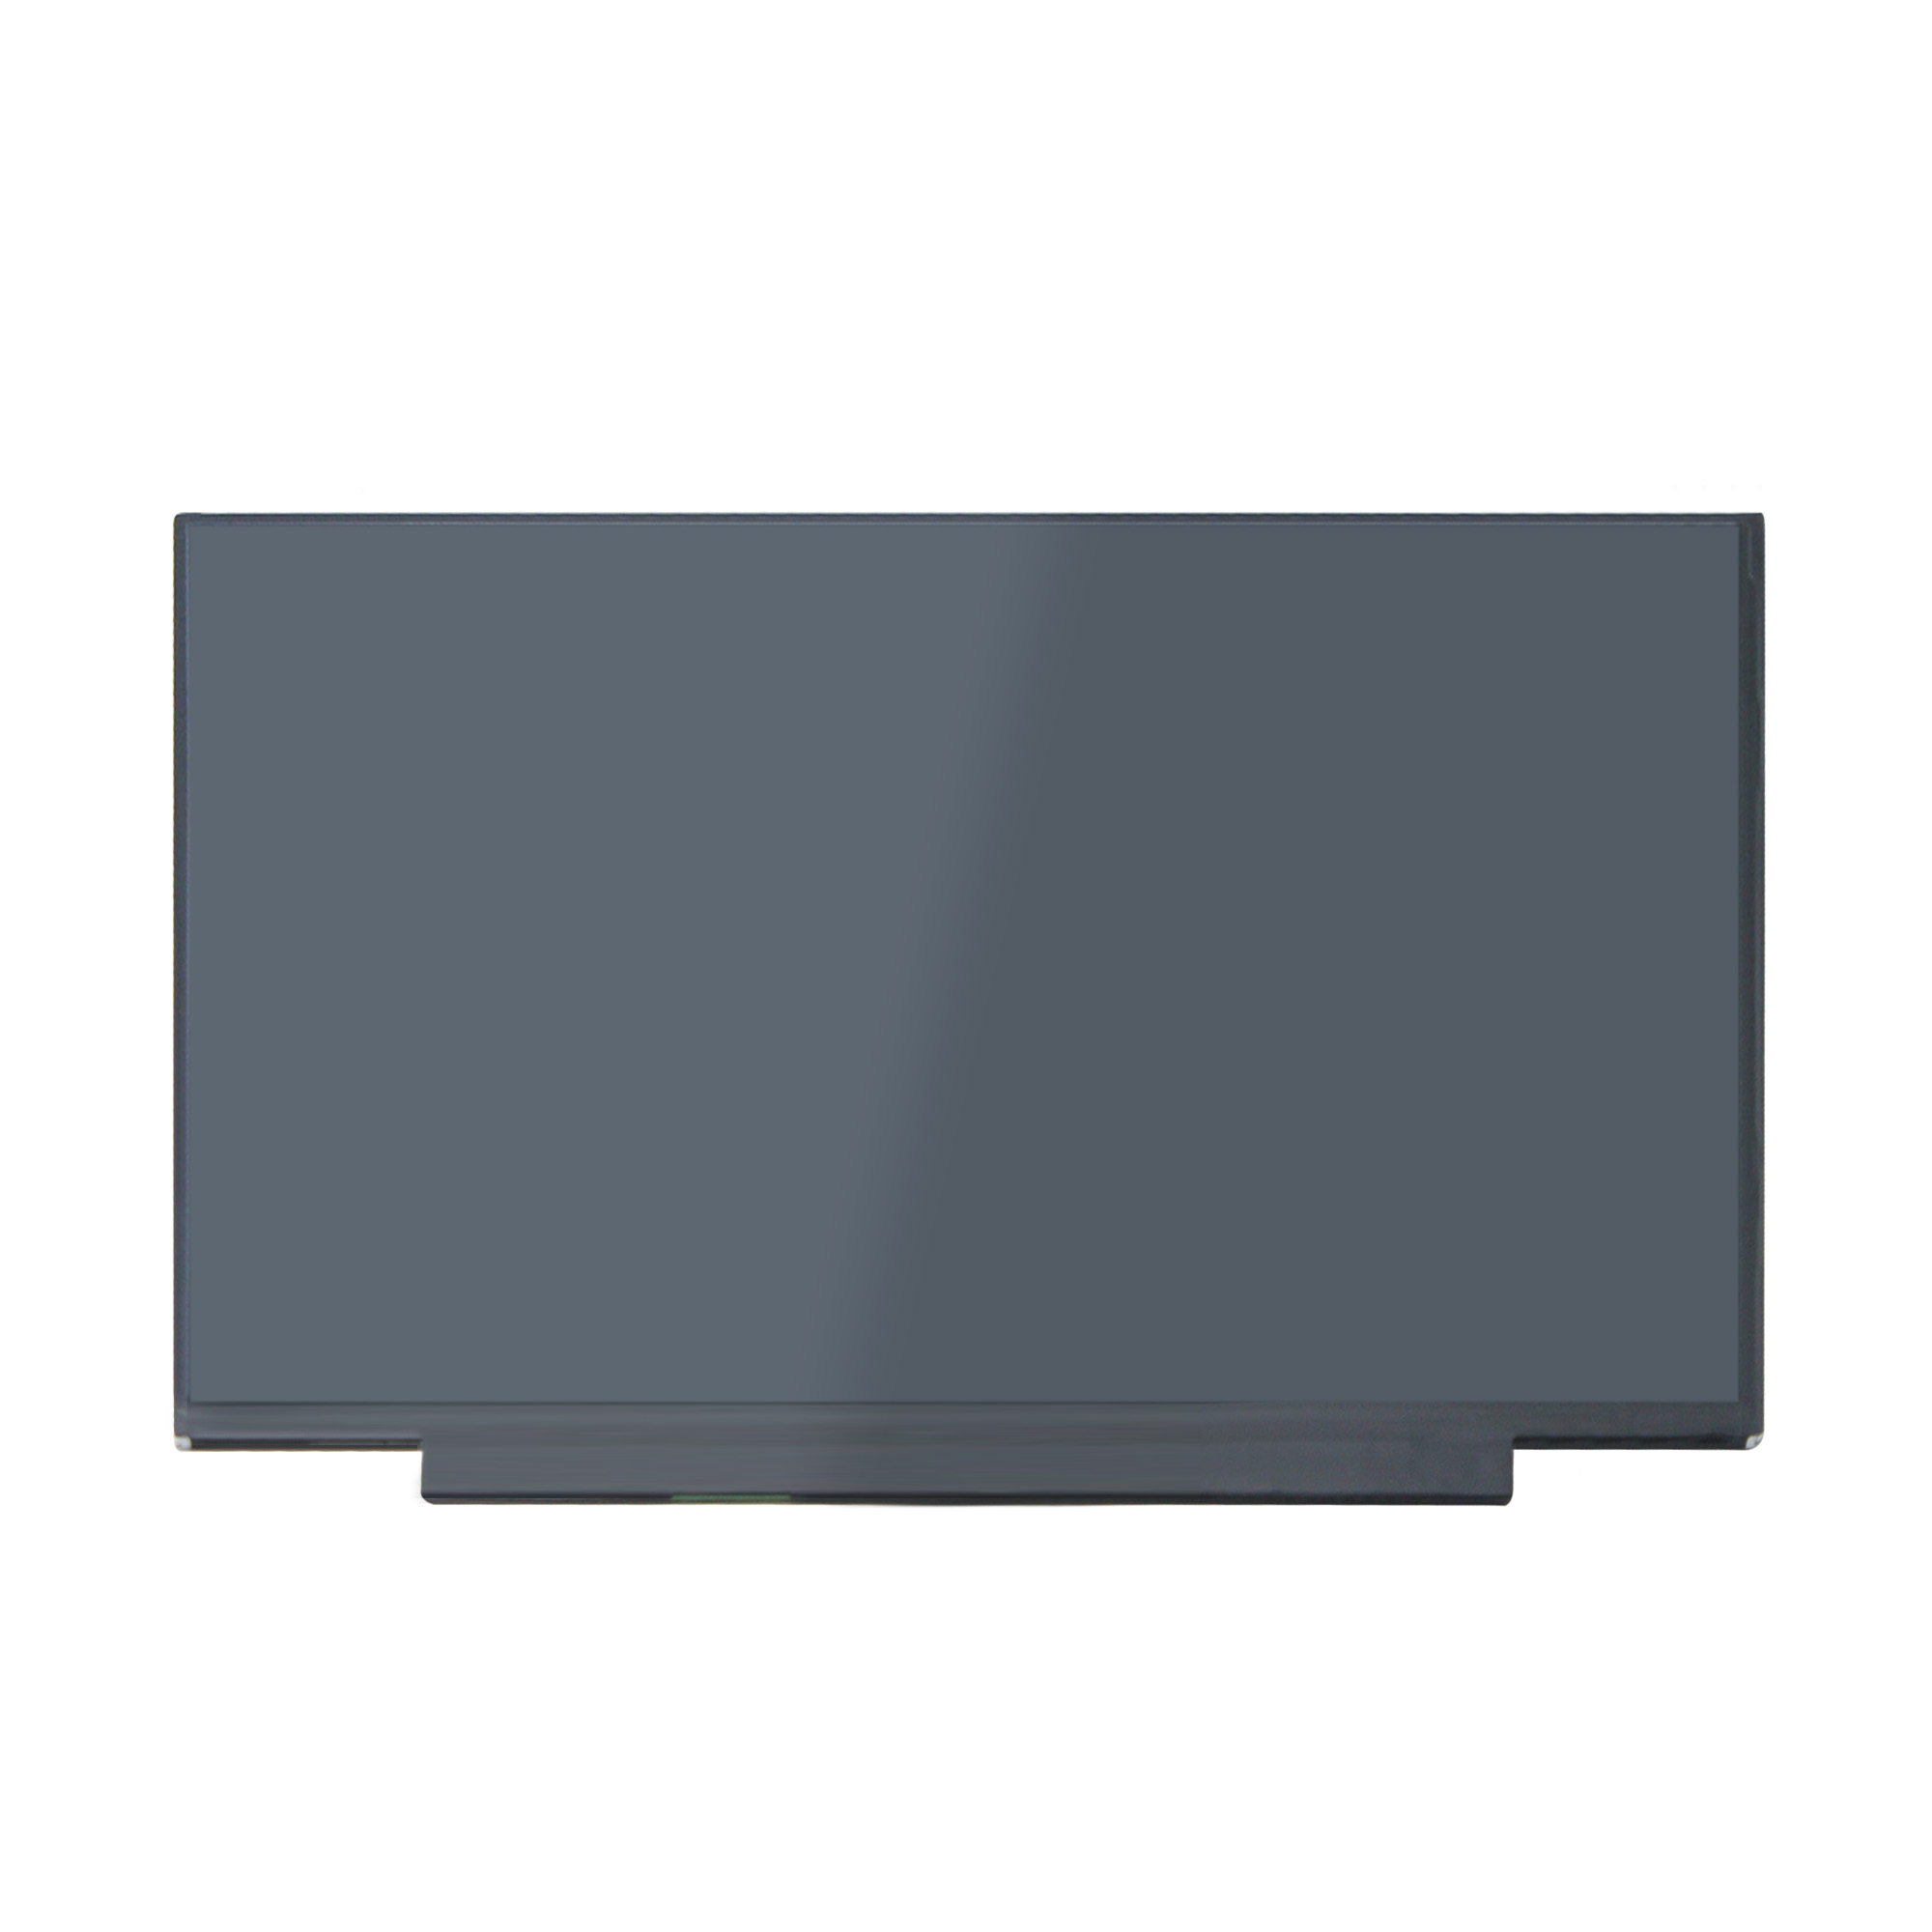 10240円 【同梱不可】 10240円 テレビで話題 Yoothi 互換品 液晶 15.6インチ MB156CS01-2 V1.0 対応 100% sRGB 60Hz 30ピン 1920x1080 FullHD IPS LED LCD 液晶ディスプレイ 修理交換用液晶パネル